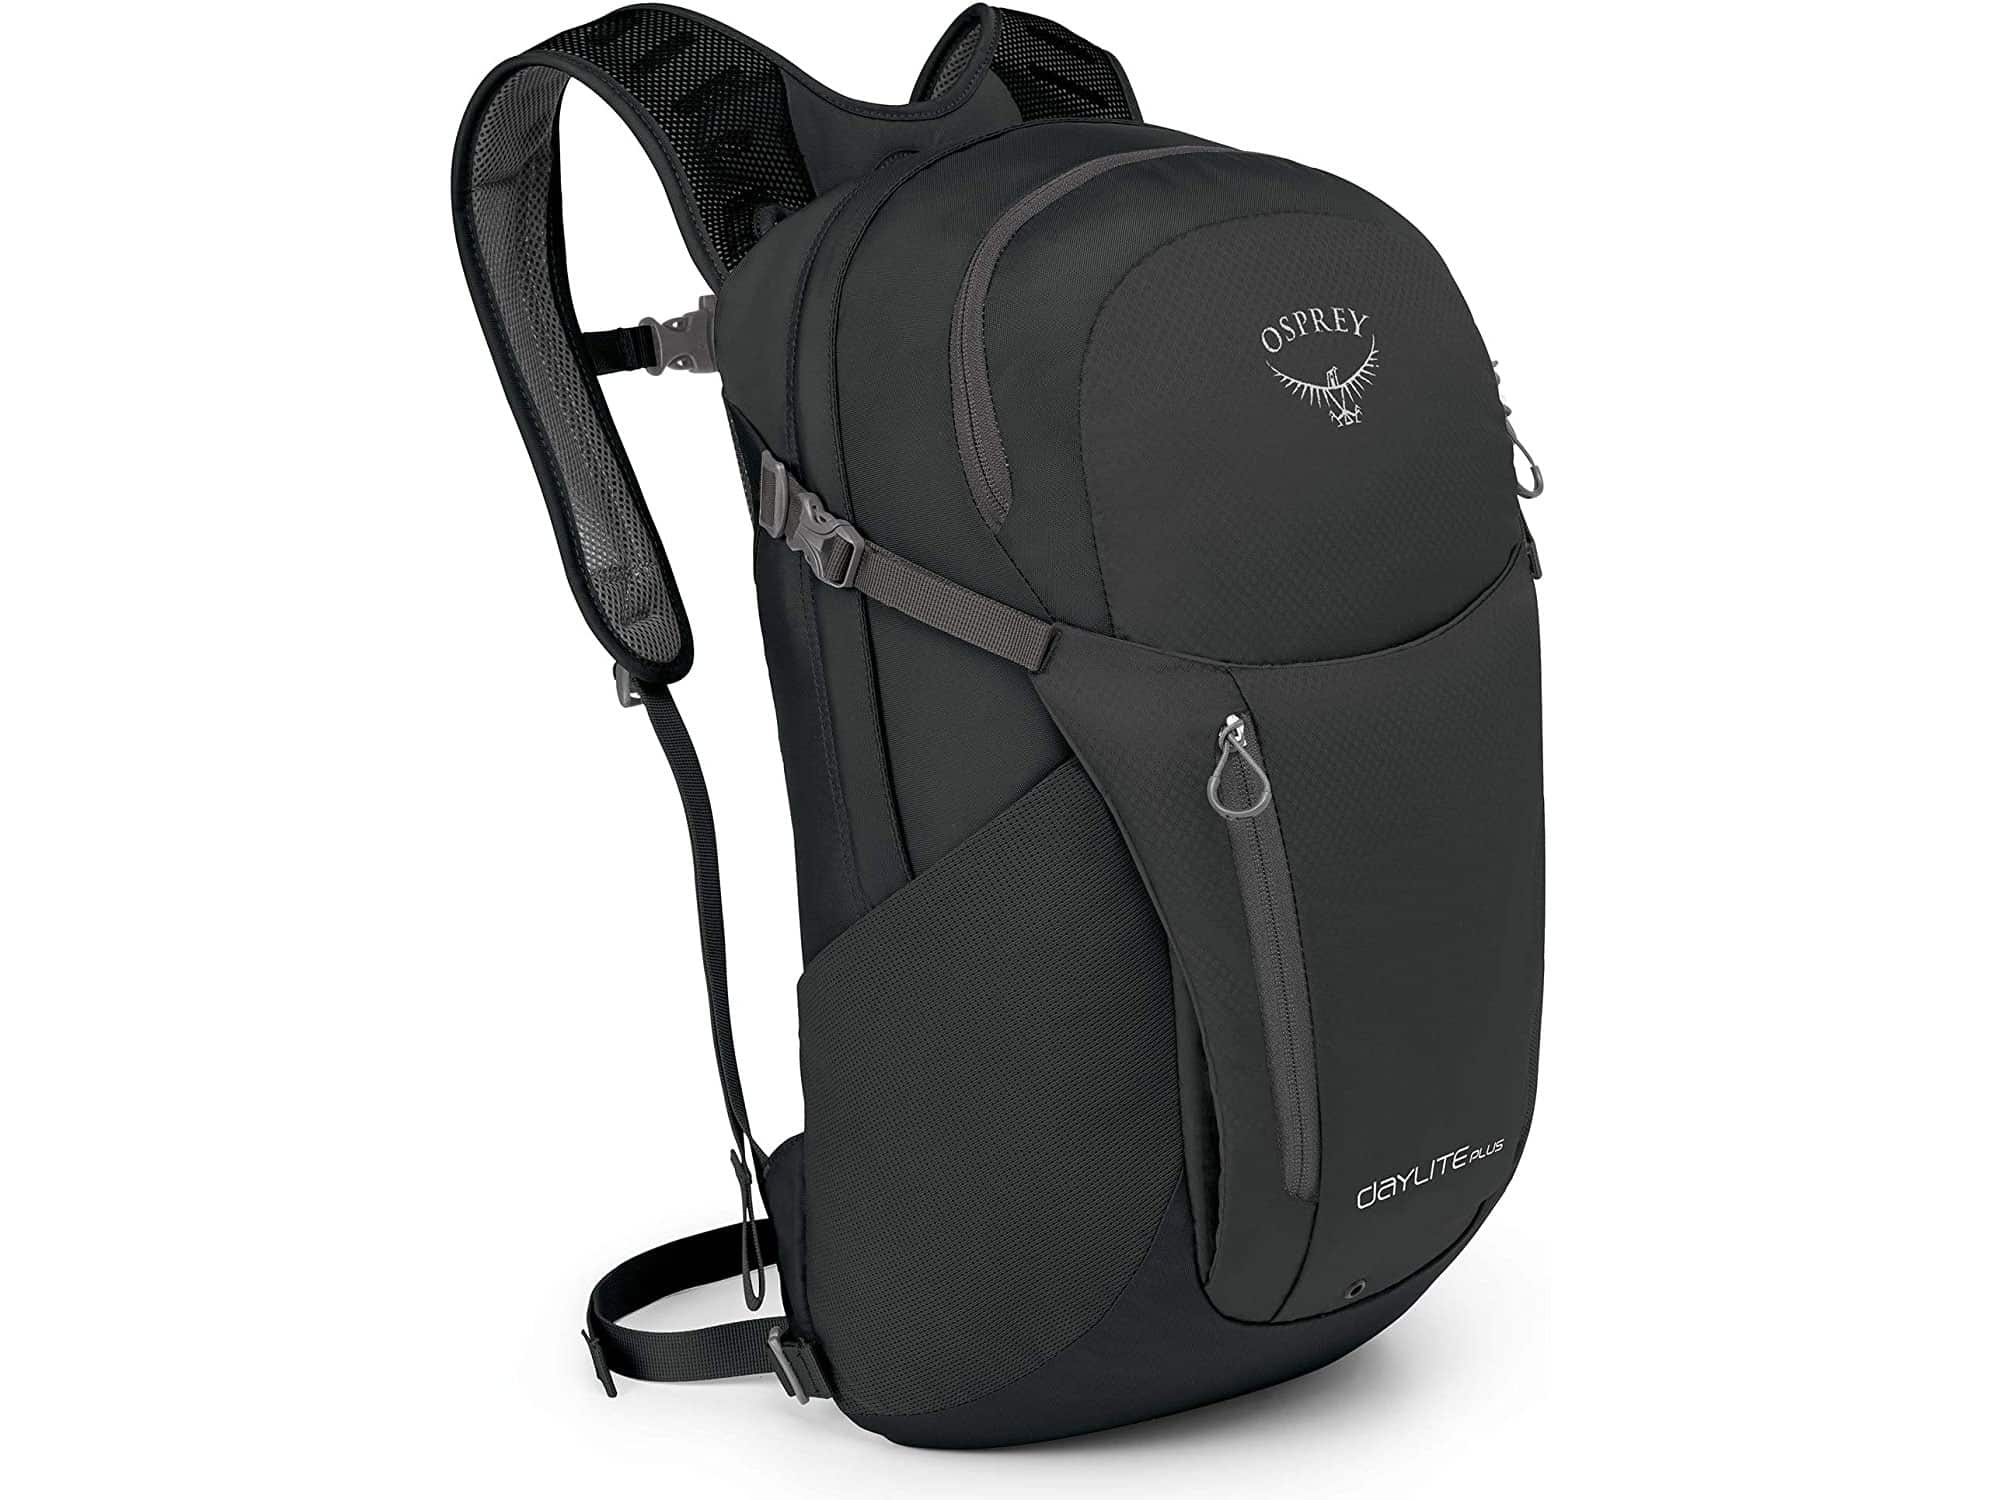 Osprey backpack